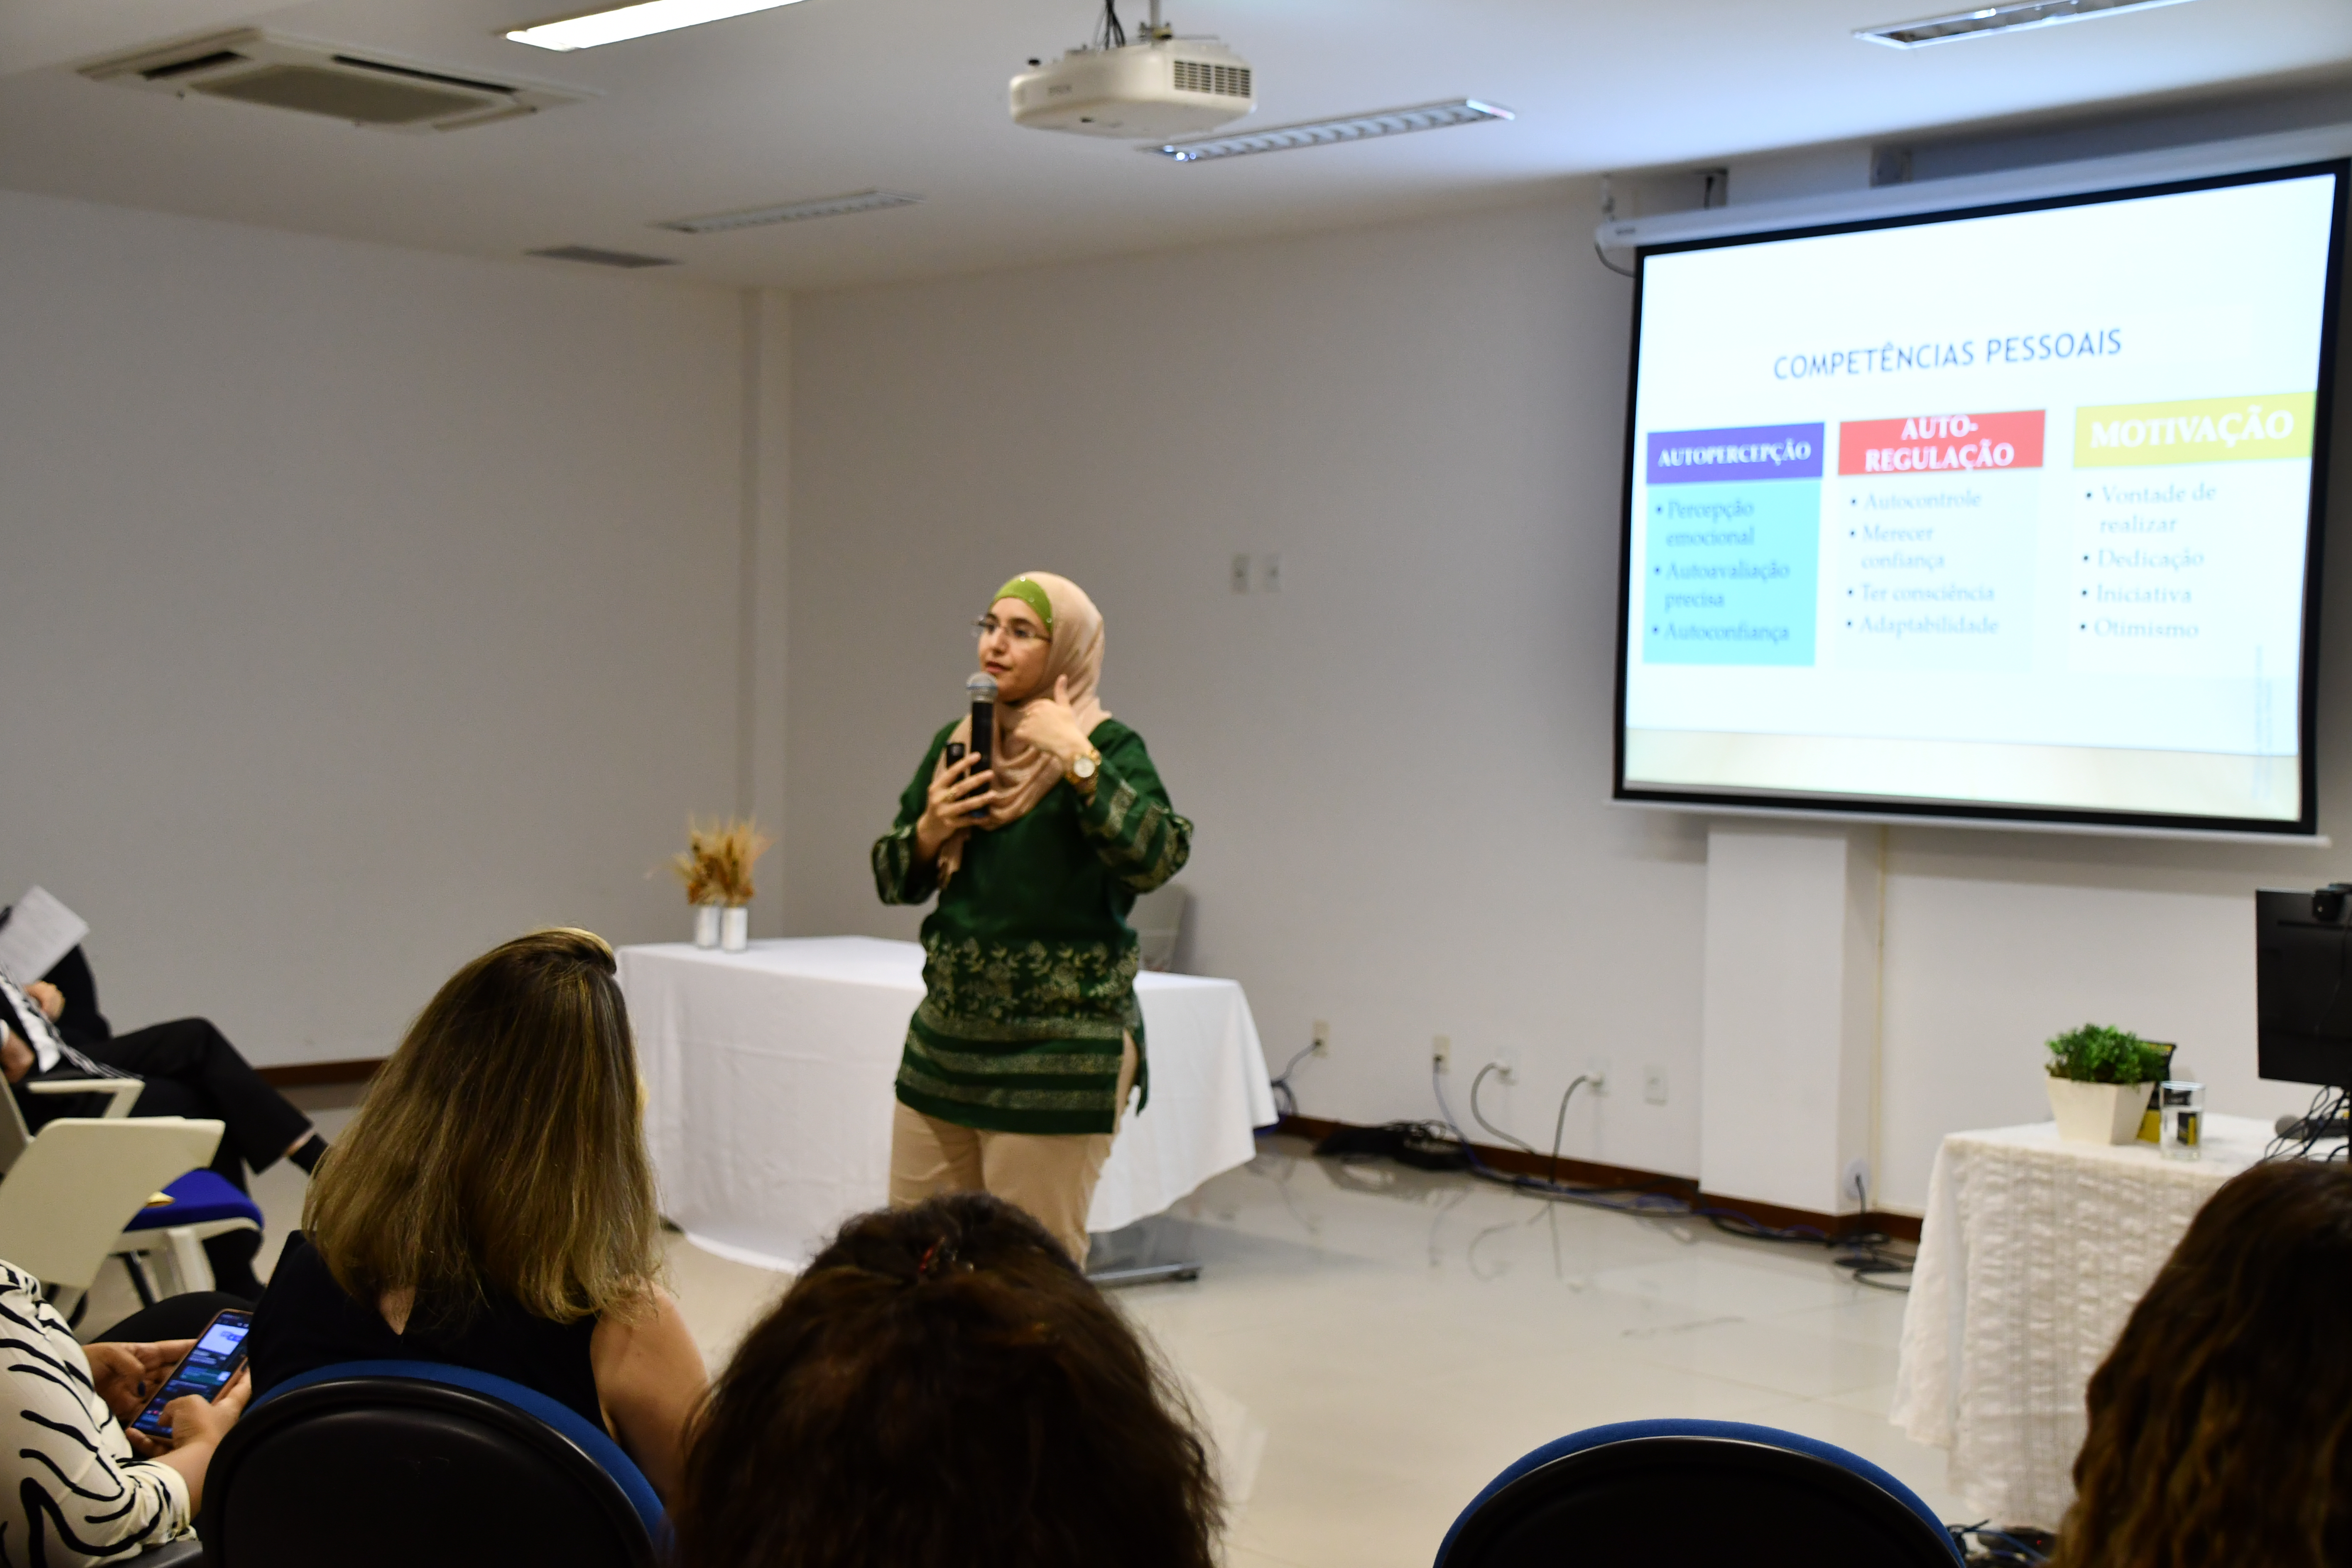  A primeira palestra do evento foi sobre “Inteligência Emocional e Empoderamento da Mulher”, ministrada pela psicóloga em saúde mental, Sálua Omais 